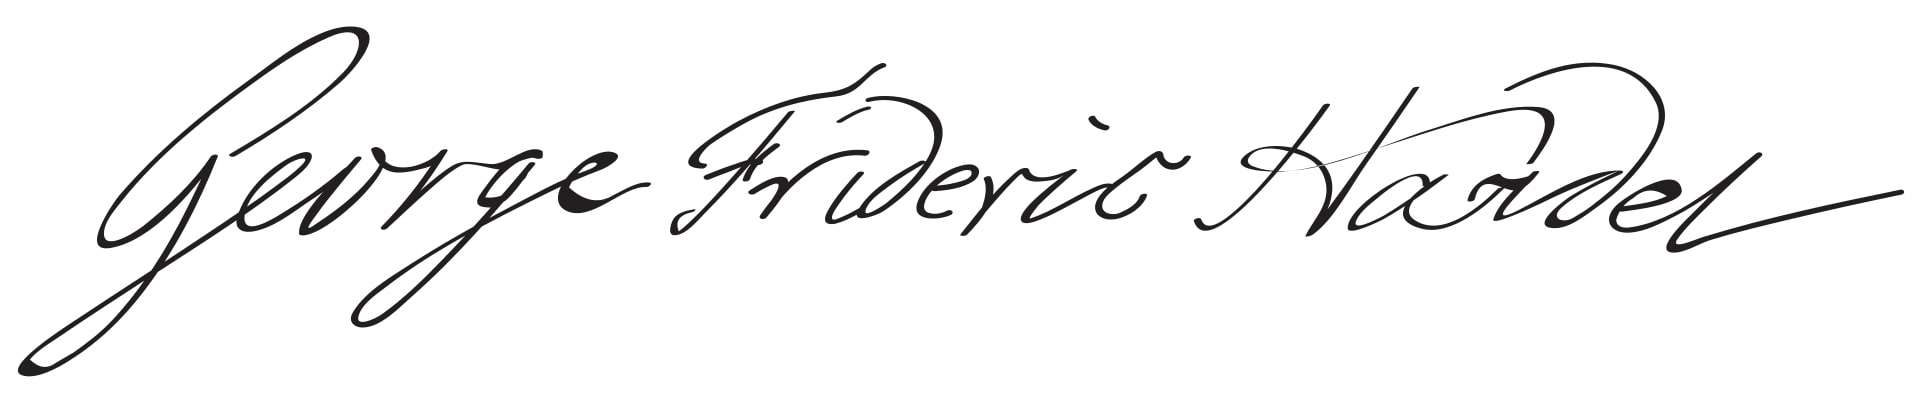 George Frideric Handel Signature